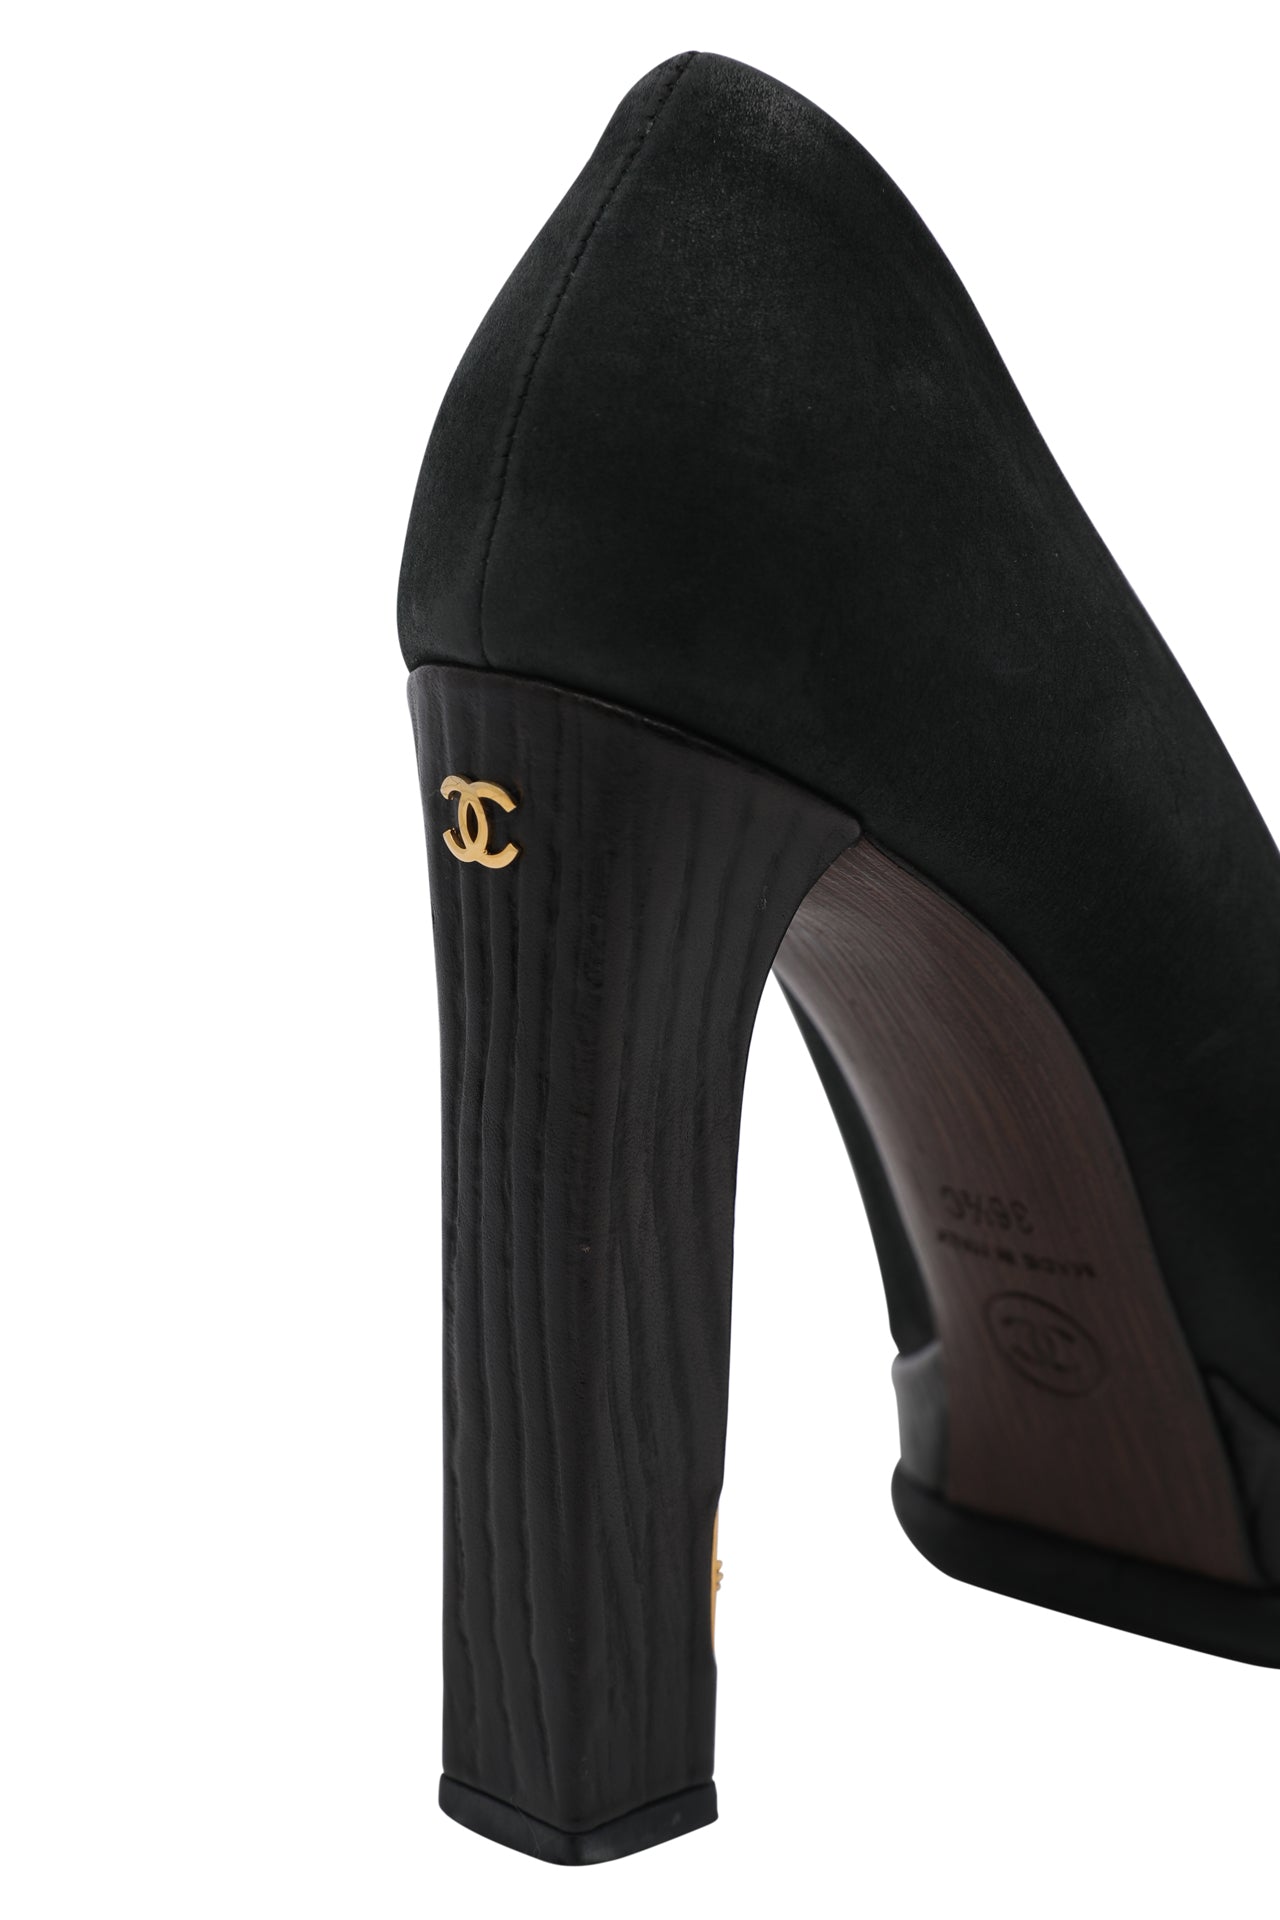 Chanel Black Suede and Leather Cap Toe Emblem Platform Pumps EU 36.5 C